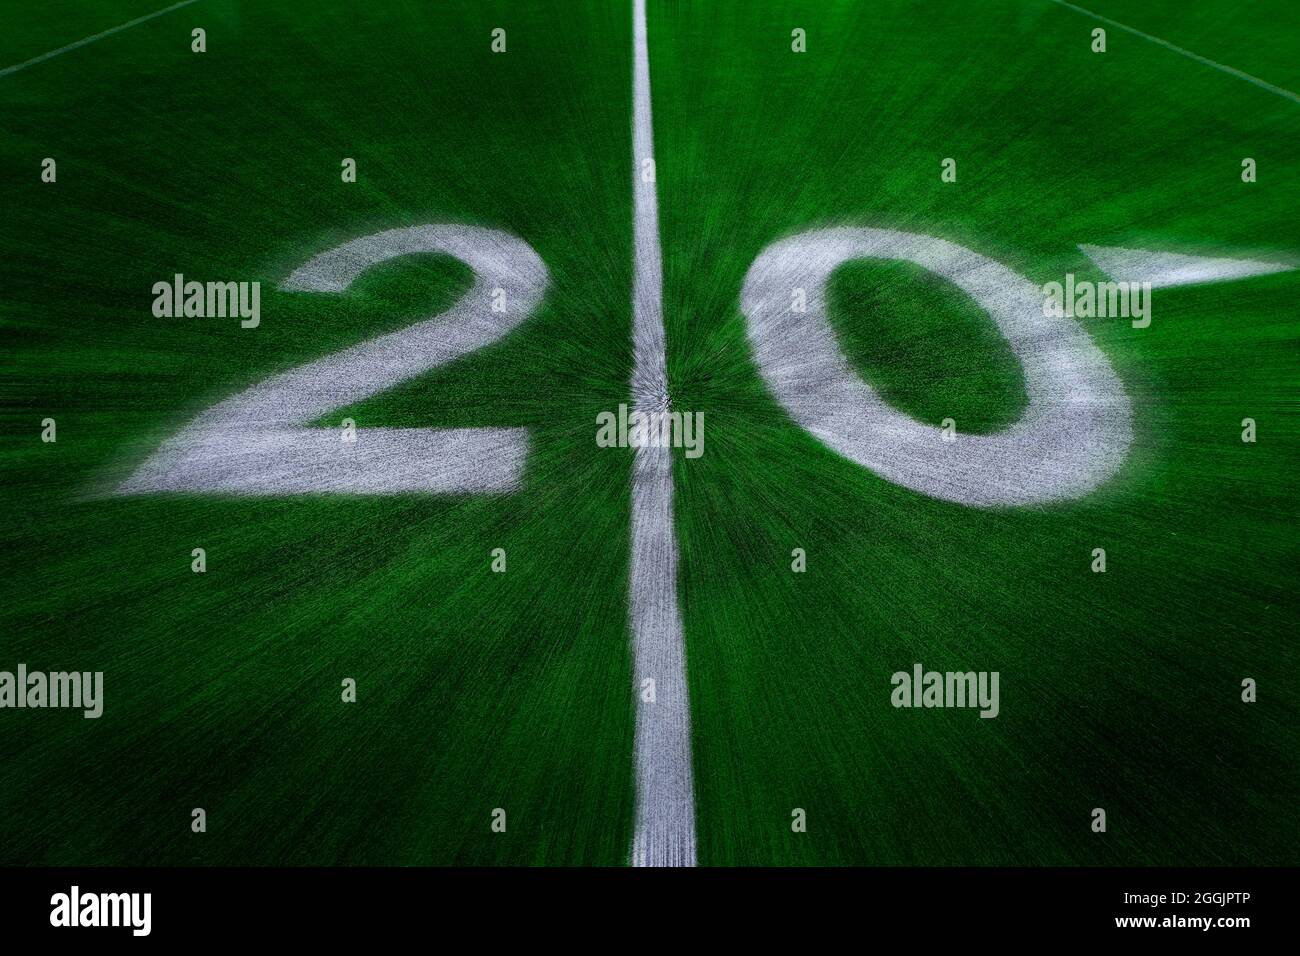 Fußballfeld grün Gras weißen Hof Marker zu Touchdown Wettbewerb Spiel Zoom Bewegung Stockfoto